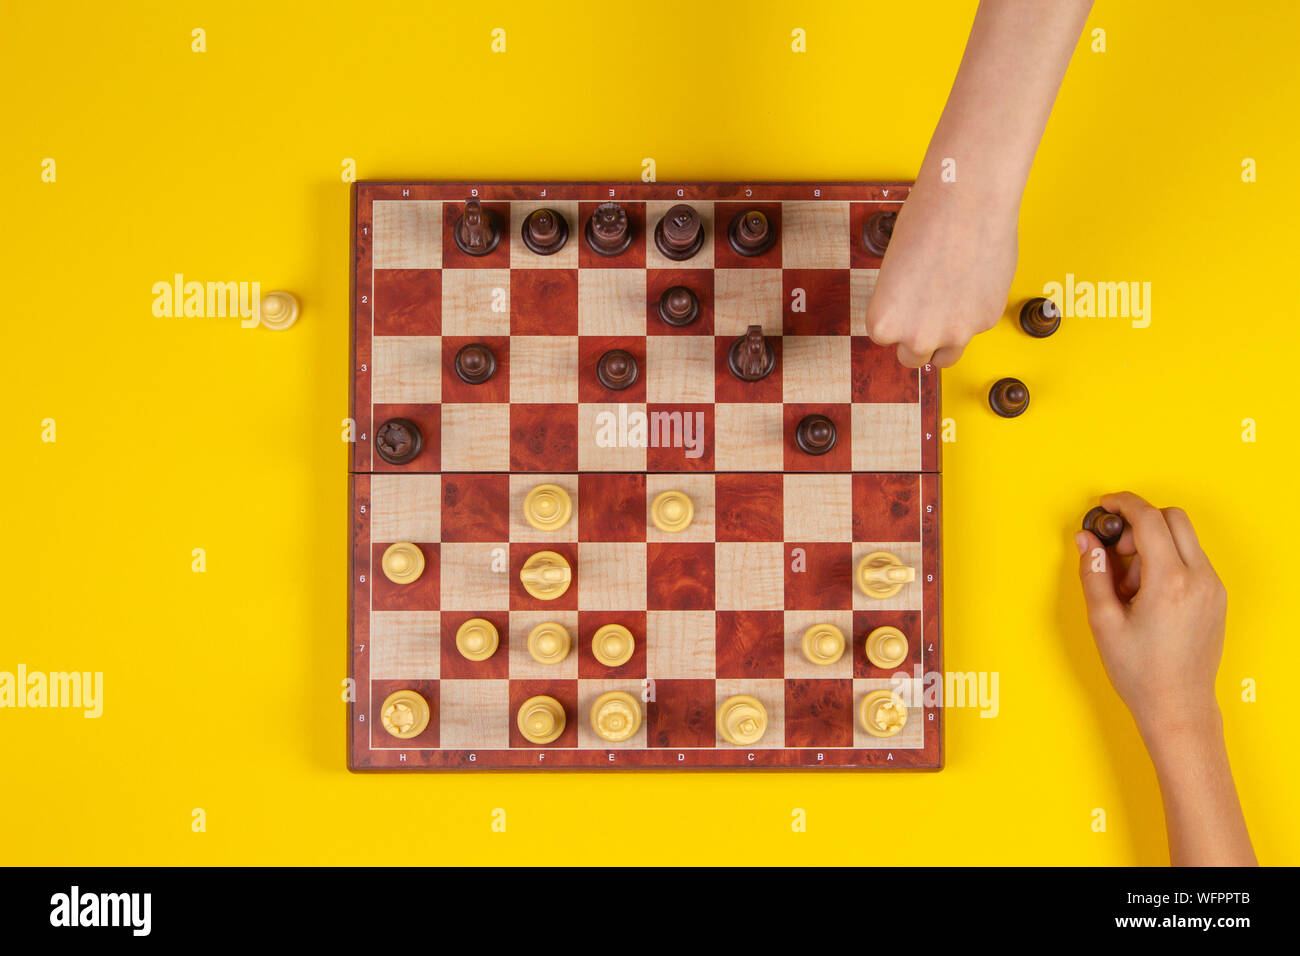 Les enfants les mains sur un échiquier jouant aux échecs sur fond jaune, vue du dessus Banque D'Images